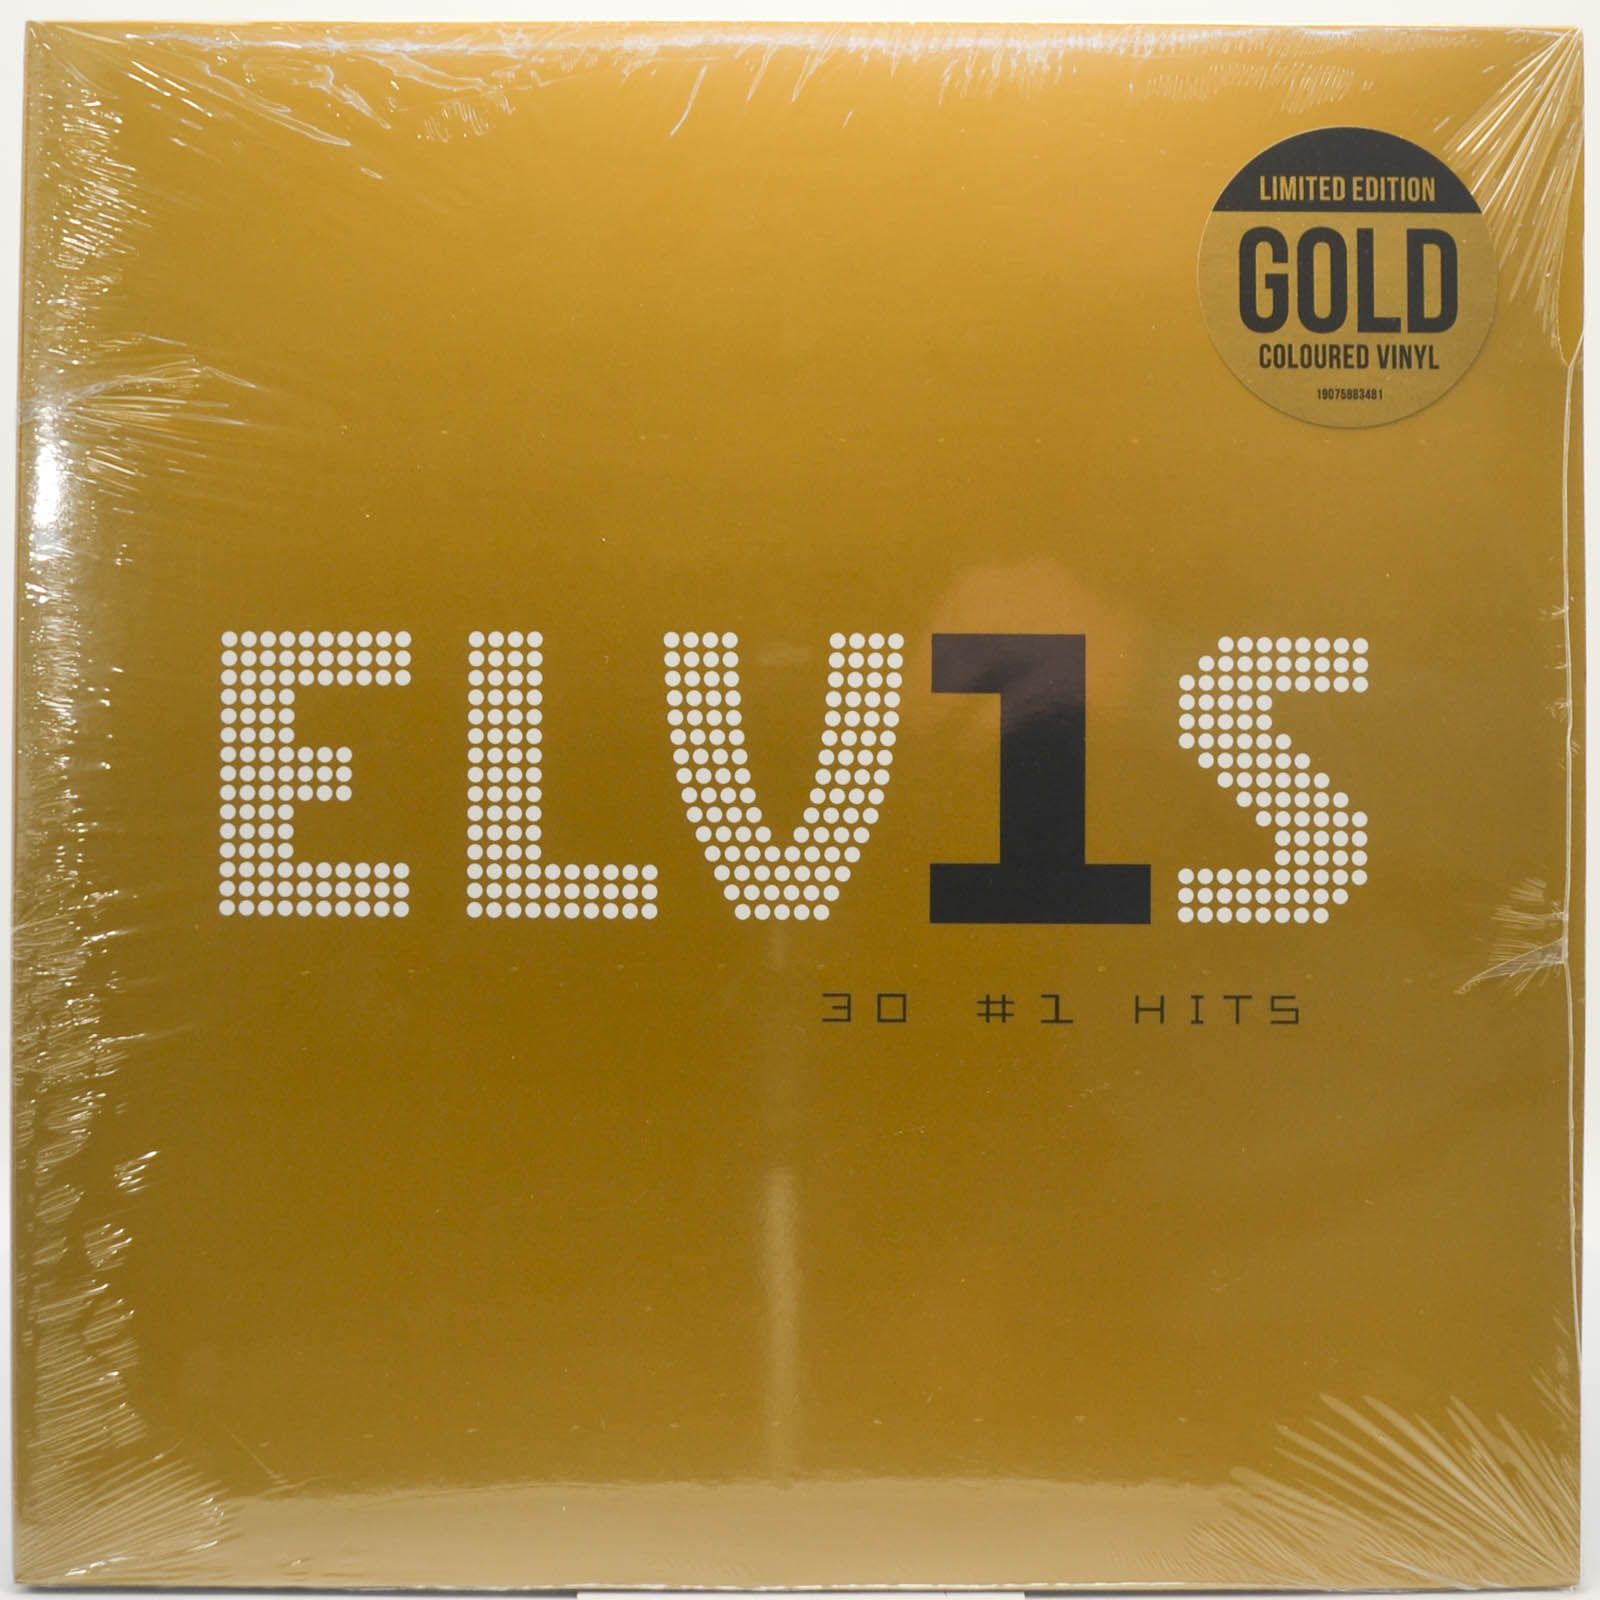 Elvis Presley — ELV1S 30 #1 Hits (2LP), 2002